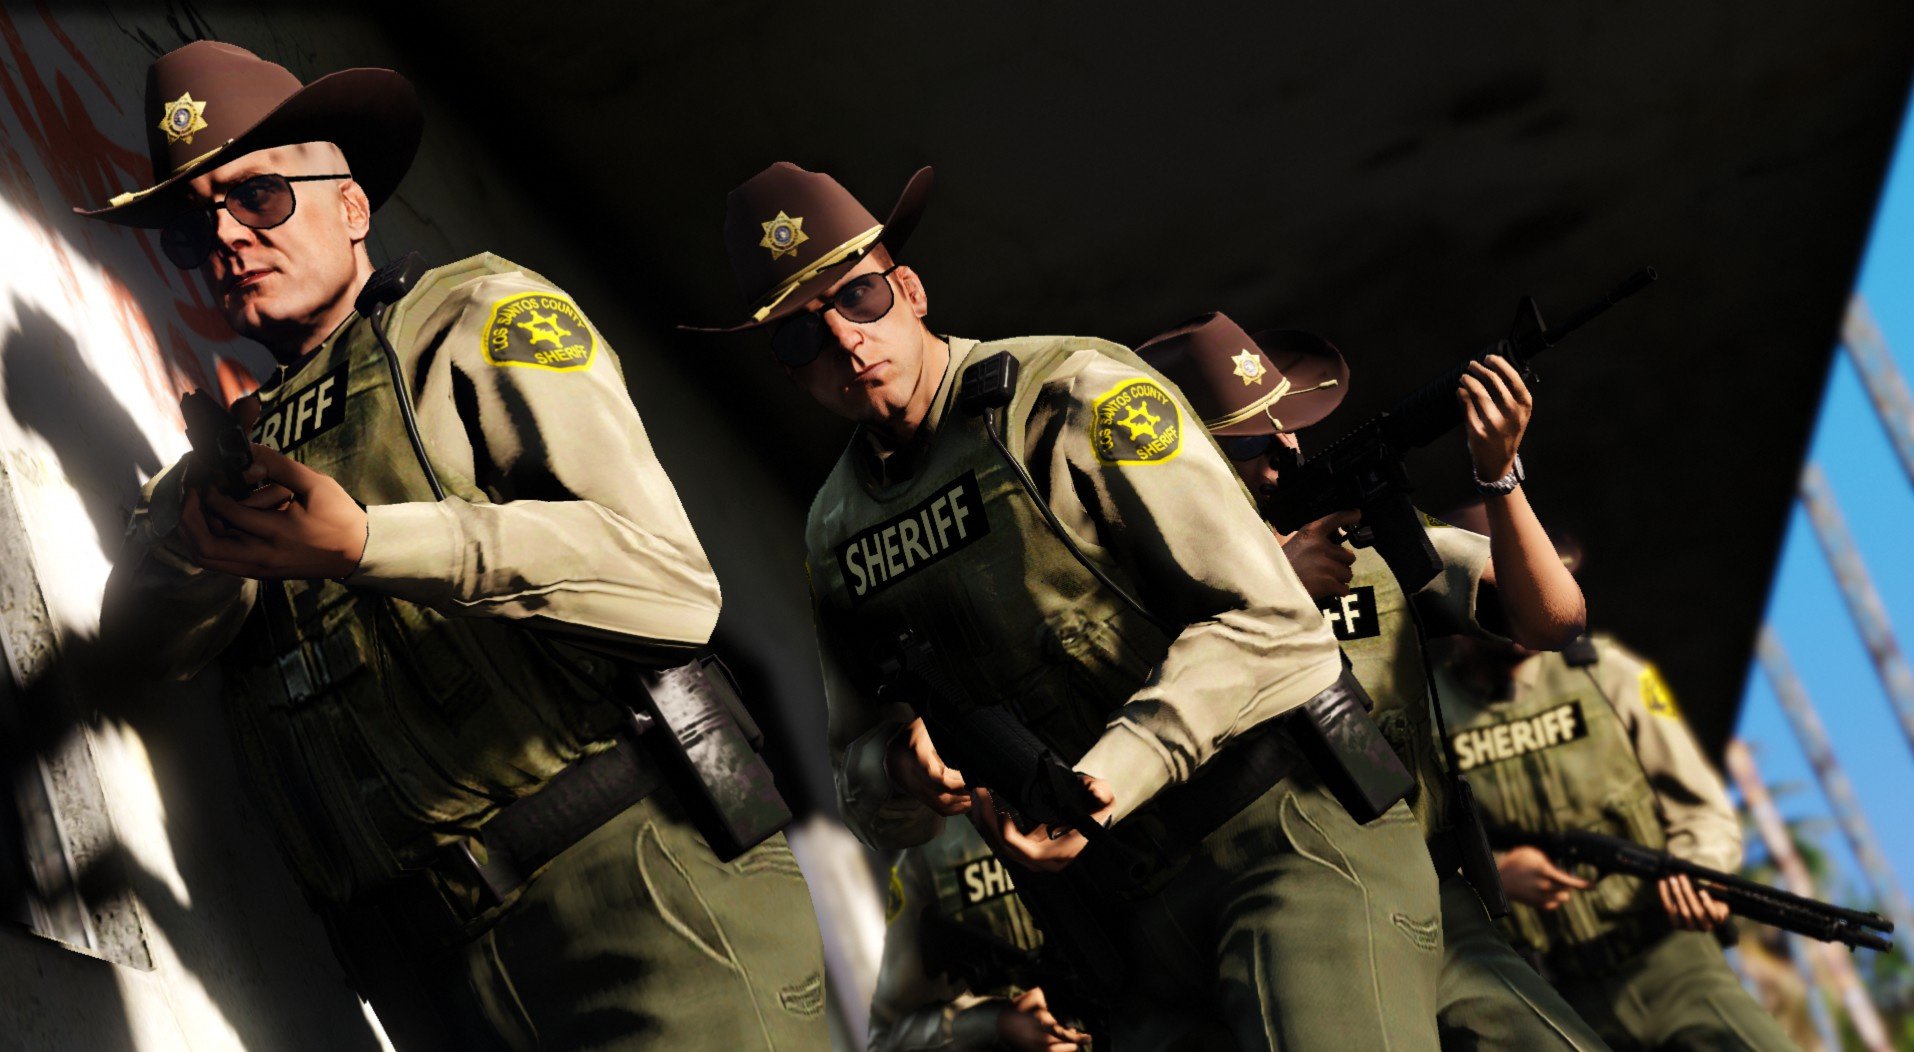 Sheriff los santos county gta 5 (118) фото